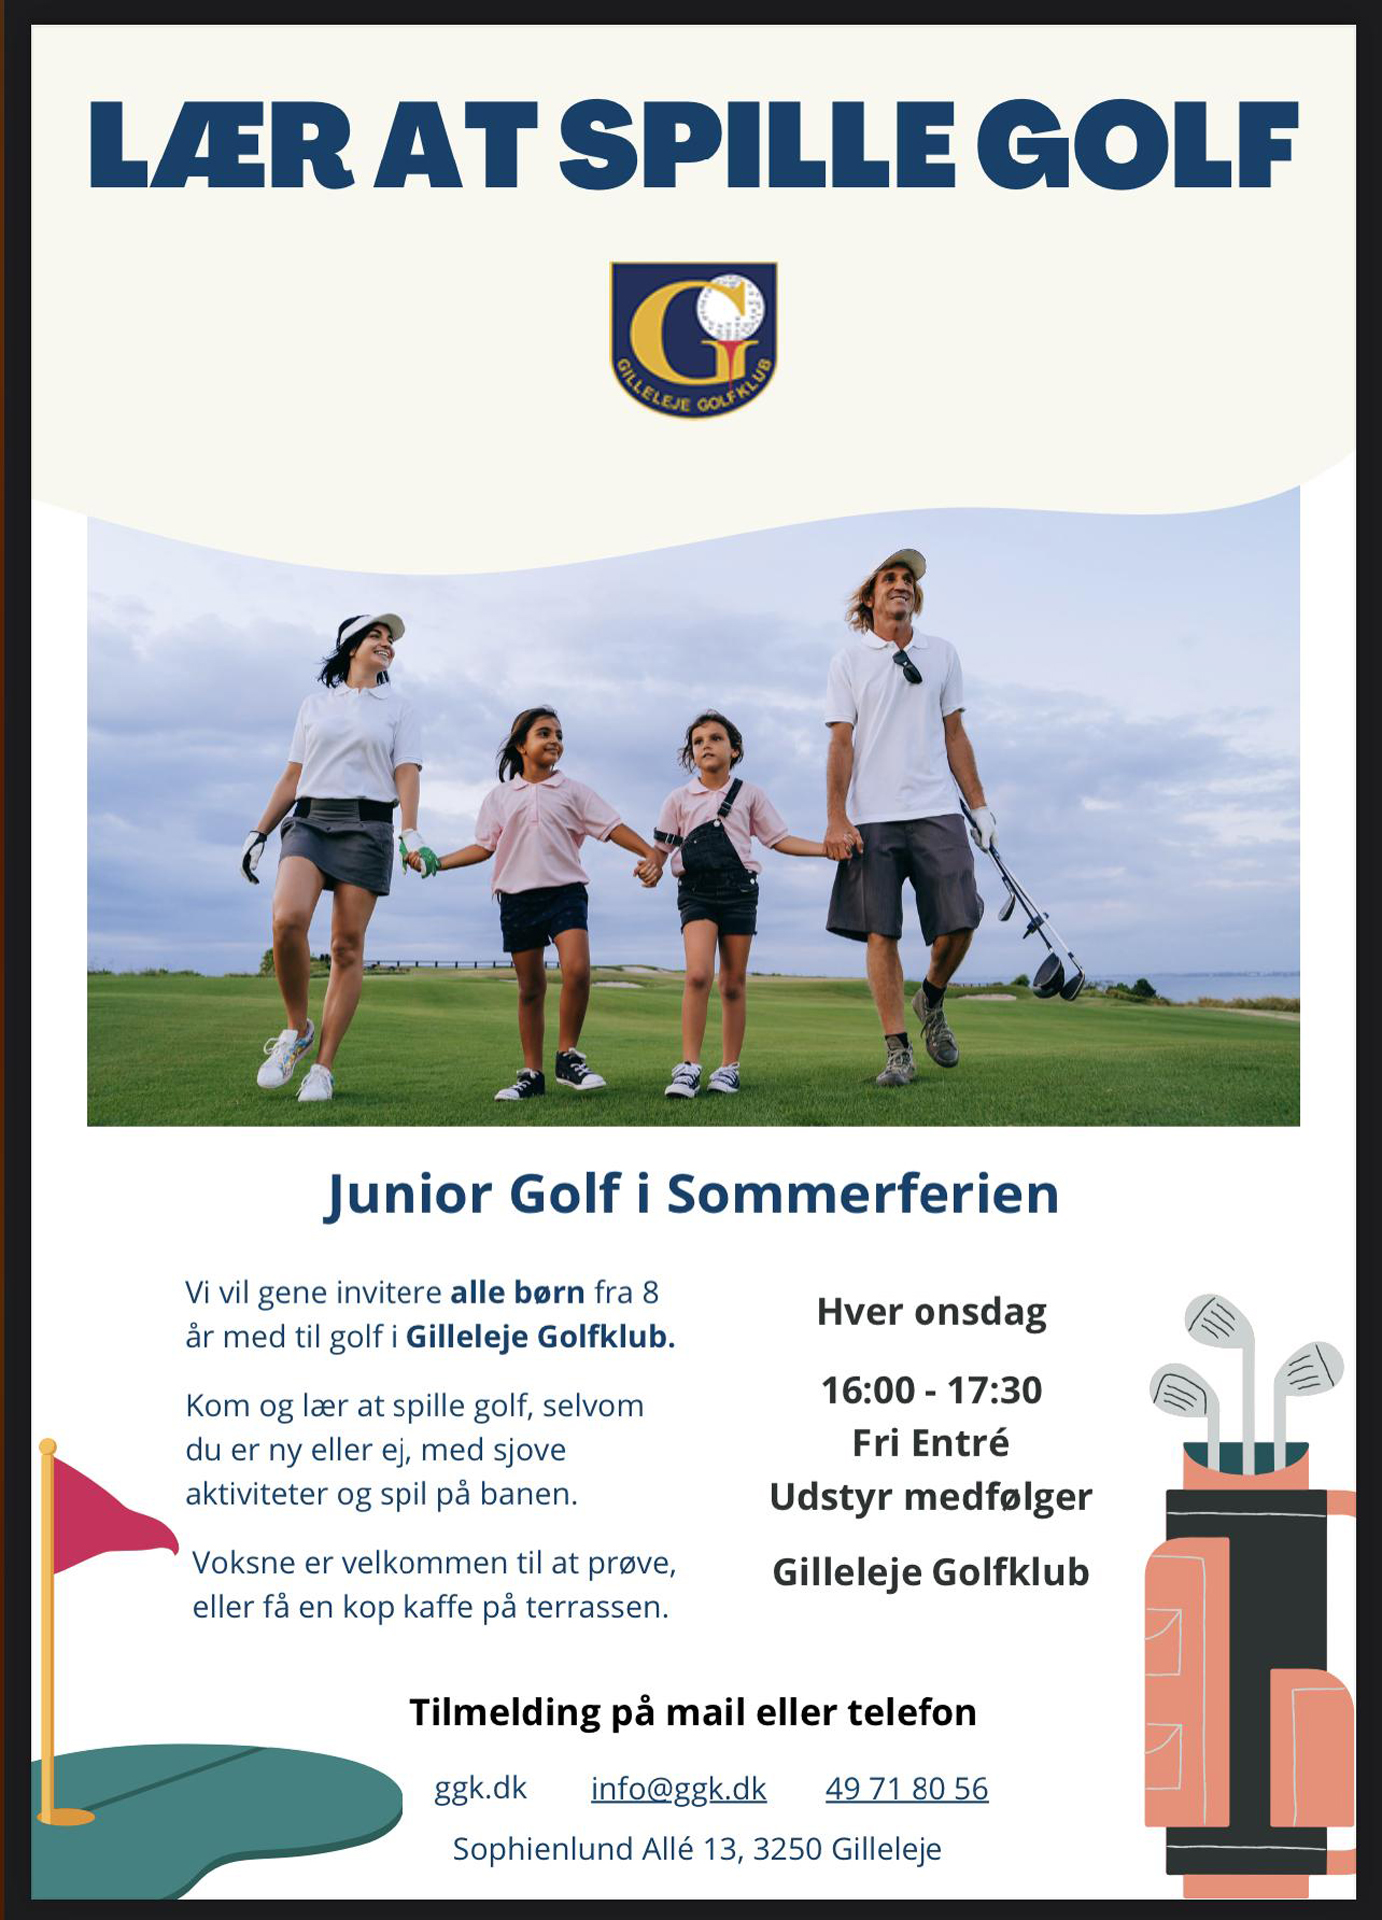 Juniorgolf i sommerferien i Gilleleje Golfklub - Lær at spille golf